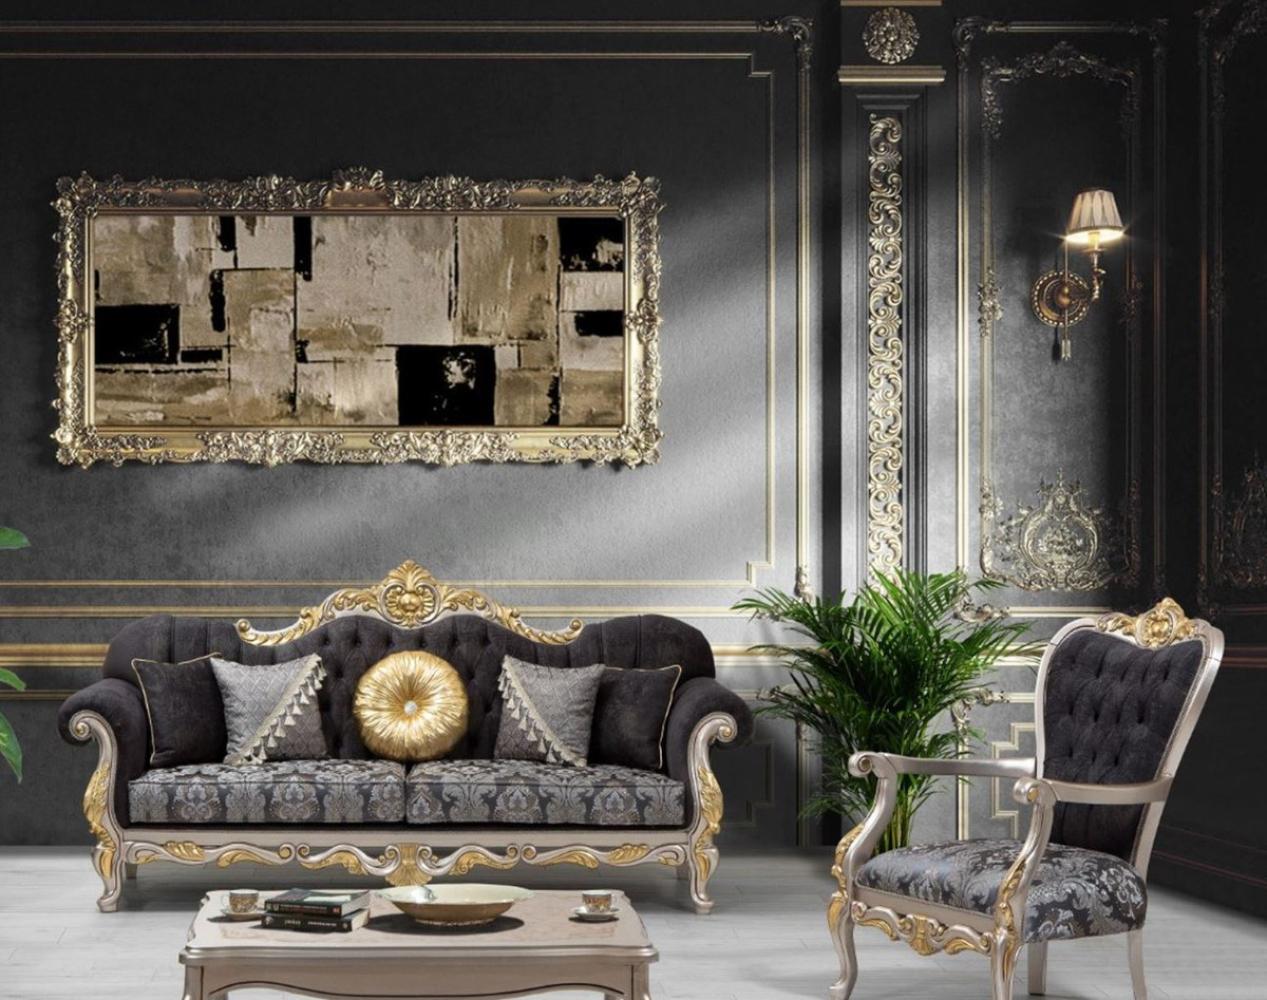 Casa Padrino Luxus Barock Wohnzimmer Set Schwarz / Silber / Gold - 2 Sofas & 2 Sessel & 1 Couchtisch - Wohnzimmer Möbel im Barockstil - Edel & Prunkvoll Bild 1